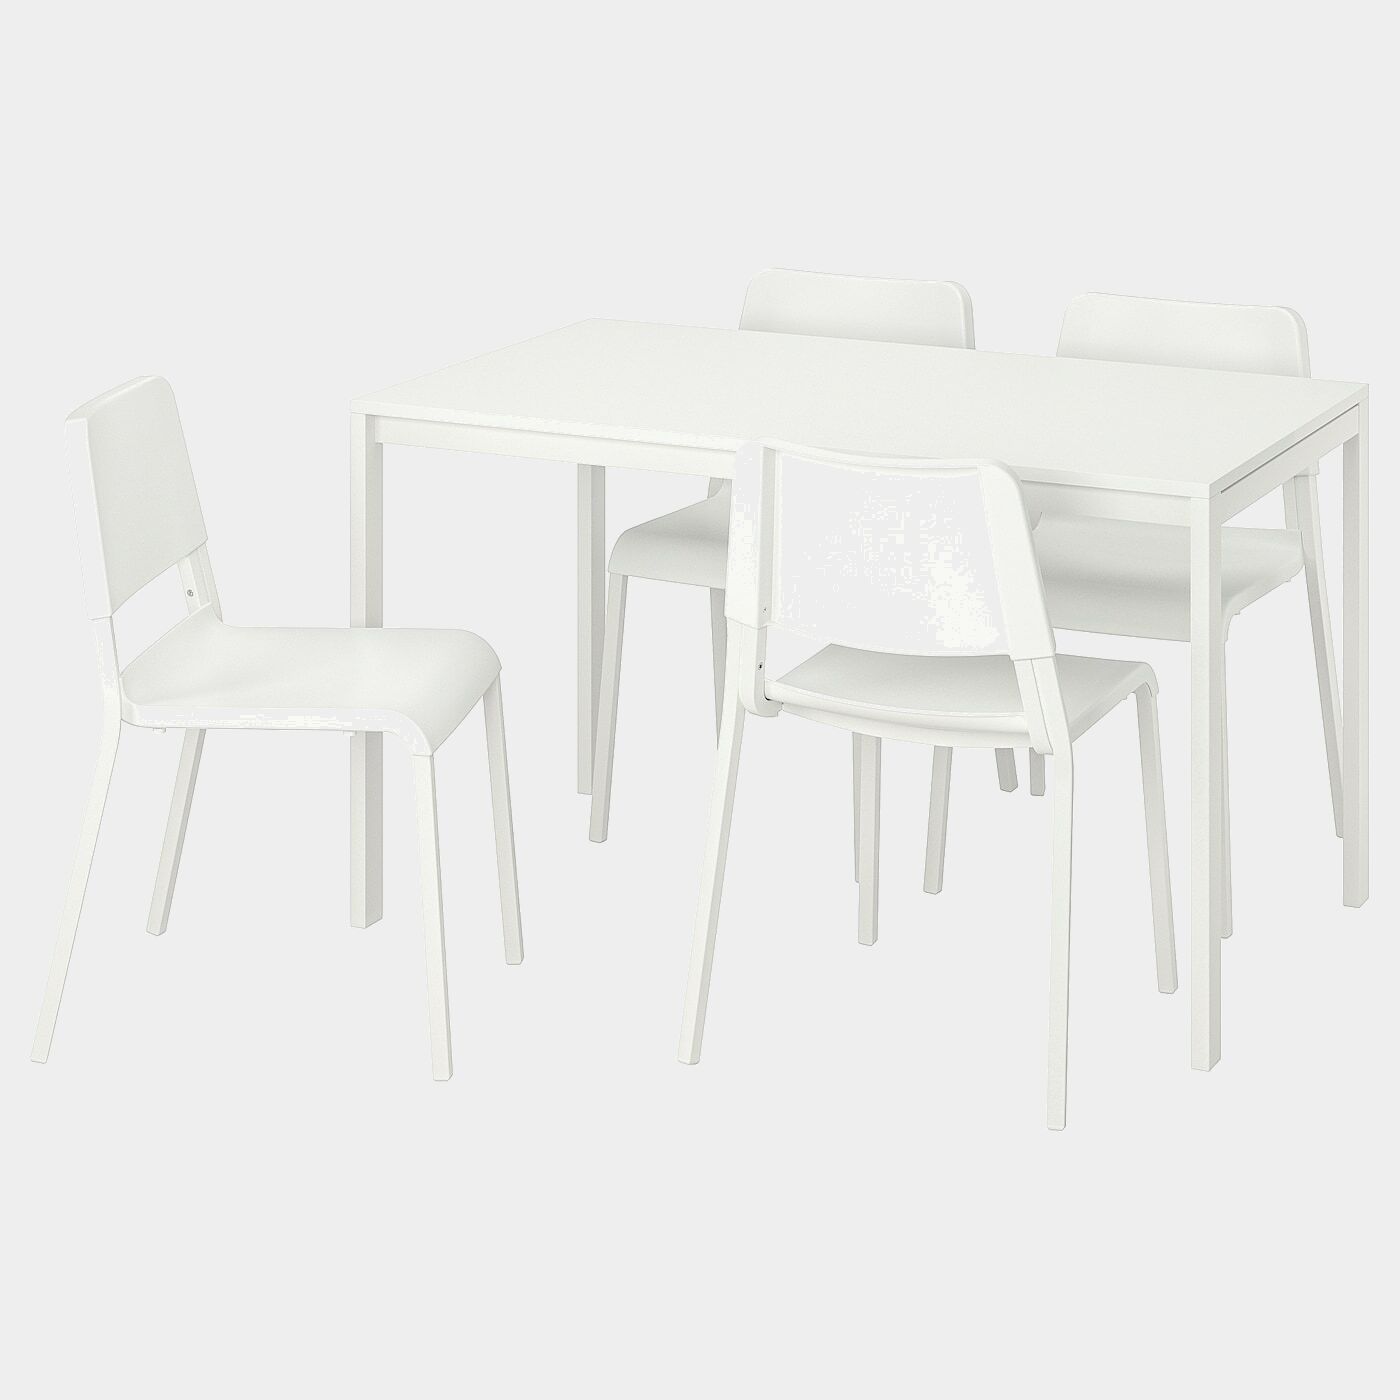 MELLTORP / TEODORES Tisch und 4 Stühle  - Essplatzgruppe - Möbel Ideen für dein Zuhause von Home Trends. Möbel Trends von Social Media Influencer für dein Skandi Zuhause.